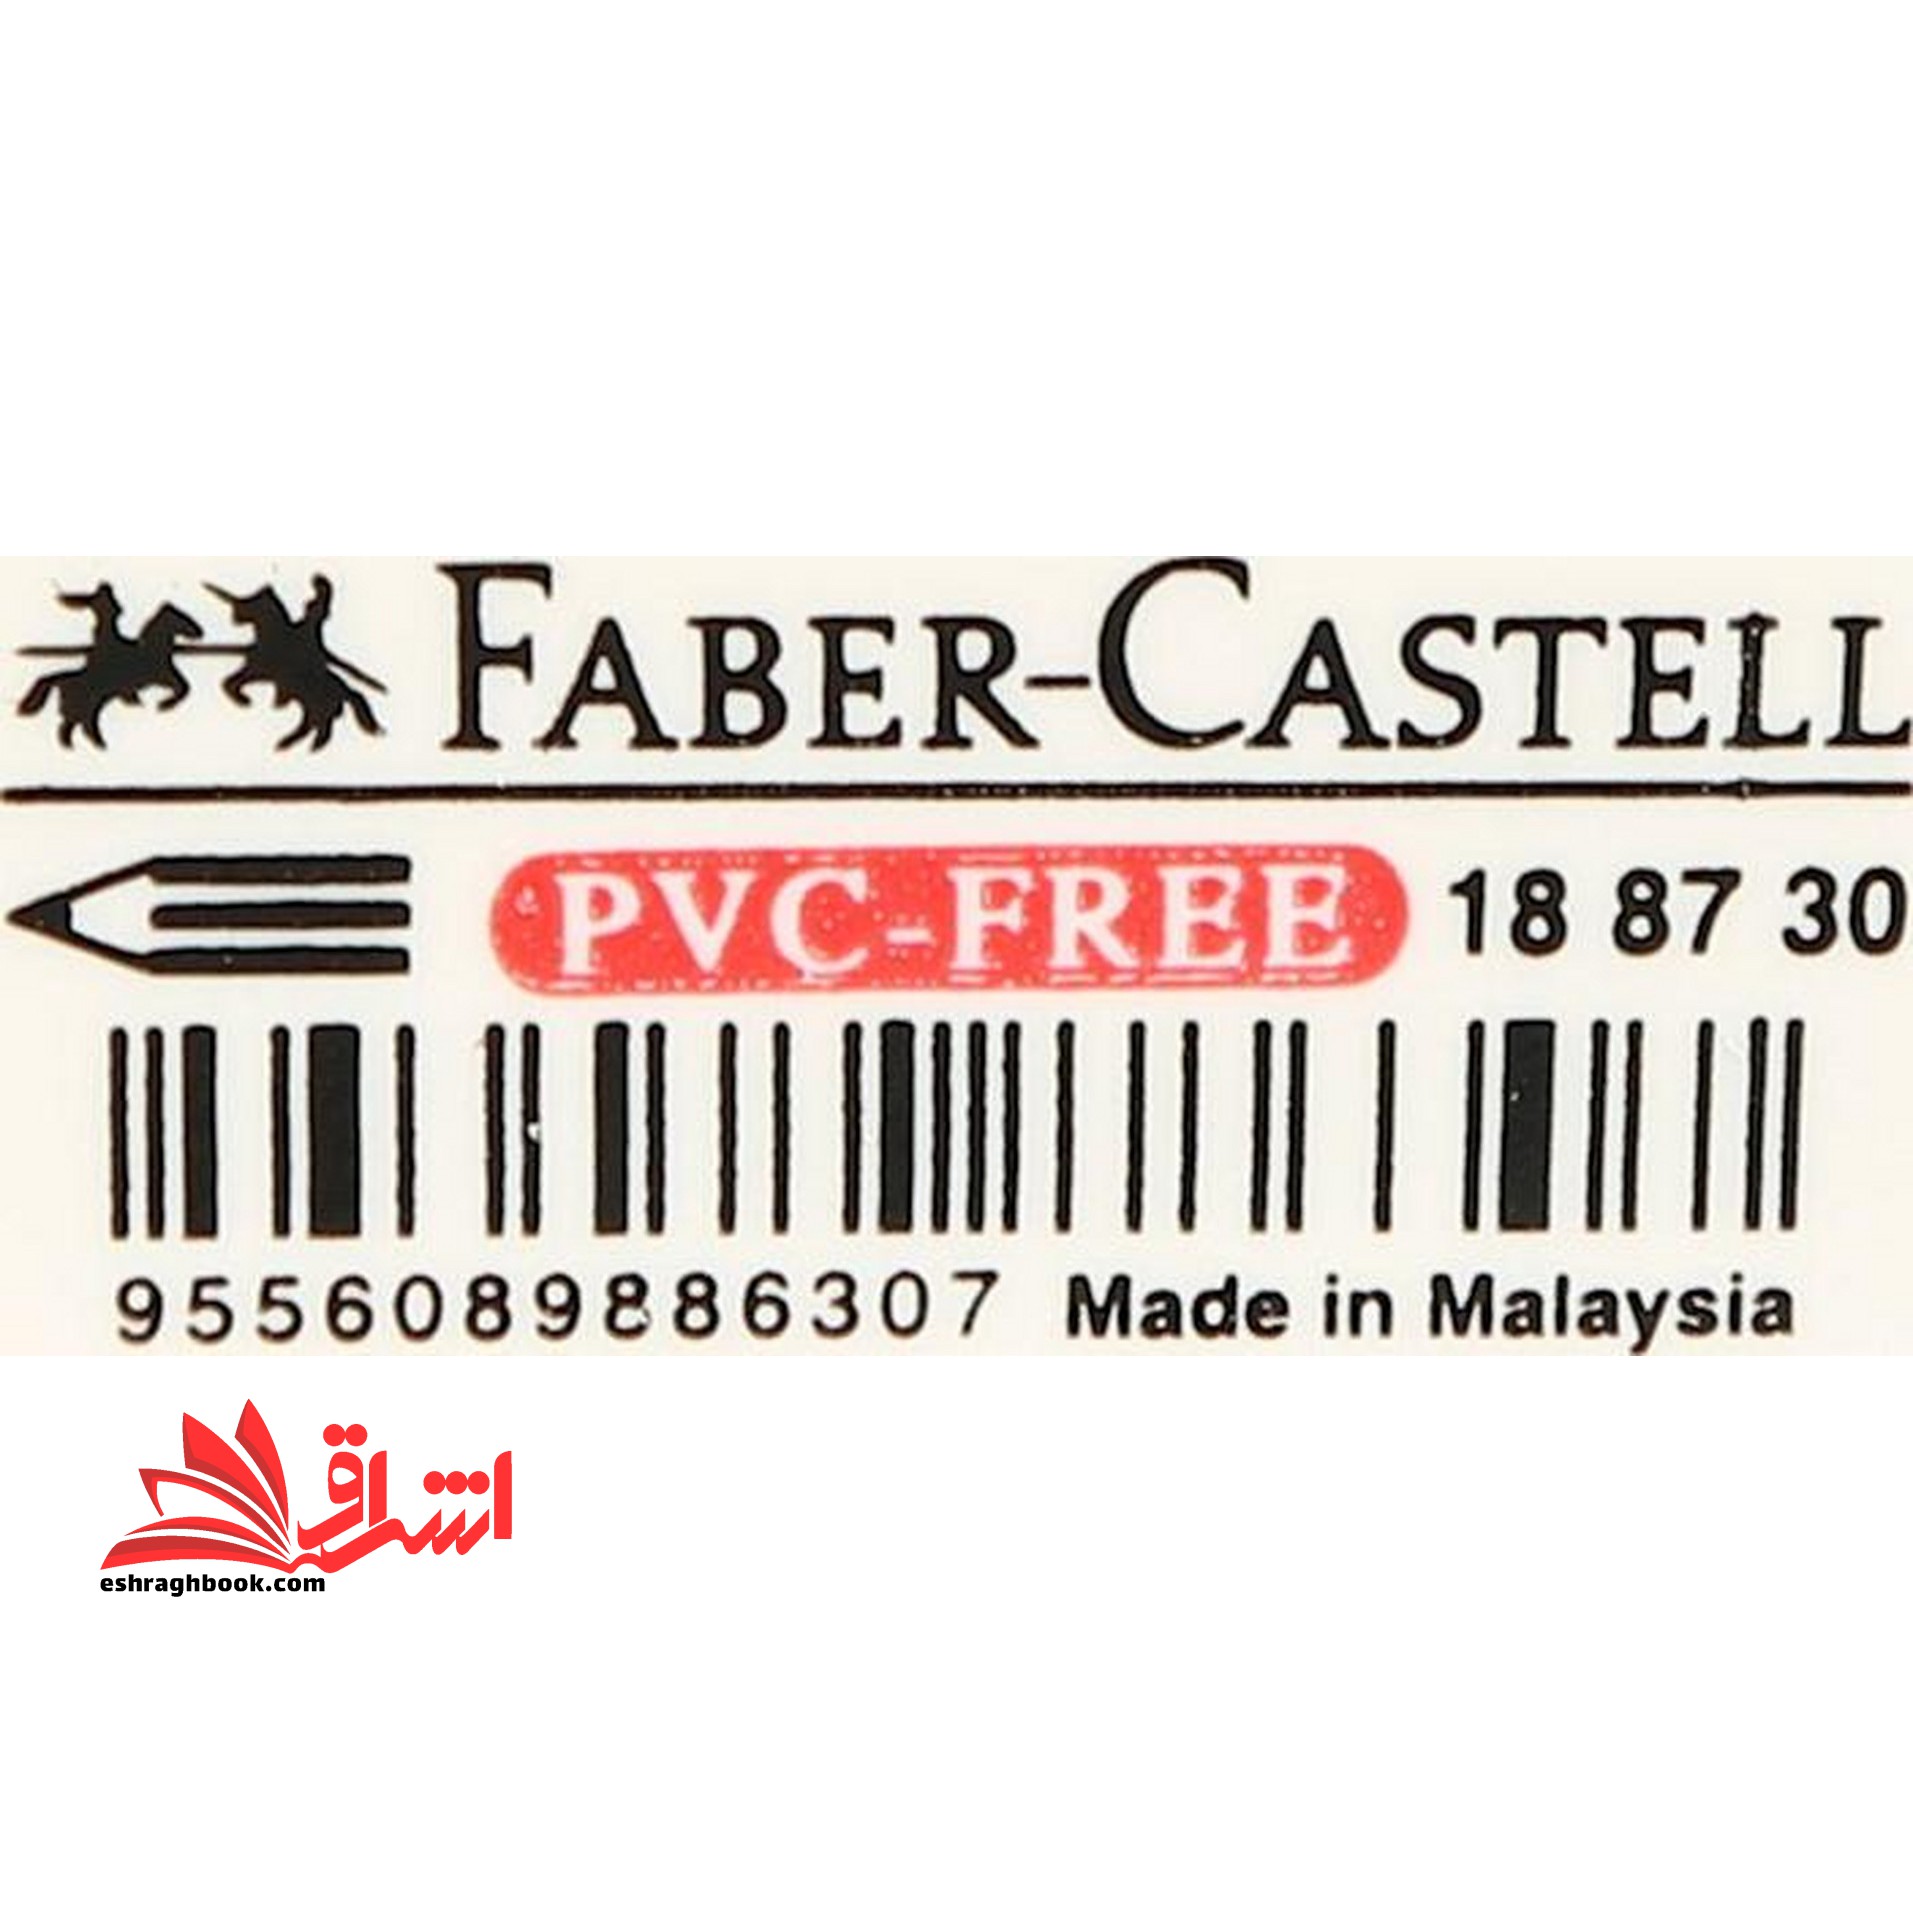 پاک کن فابرکاستل Faber-castell pvc-free سفید رنگ